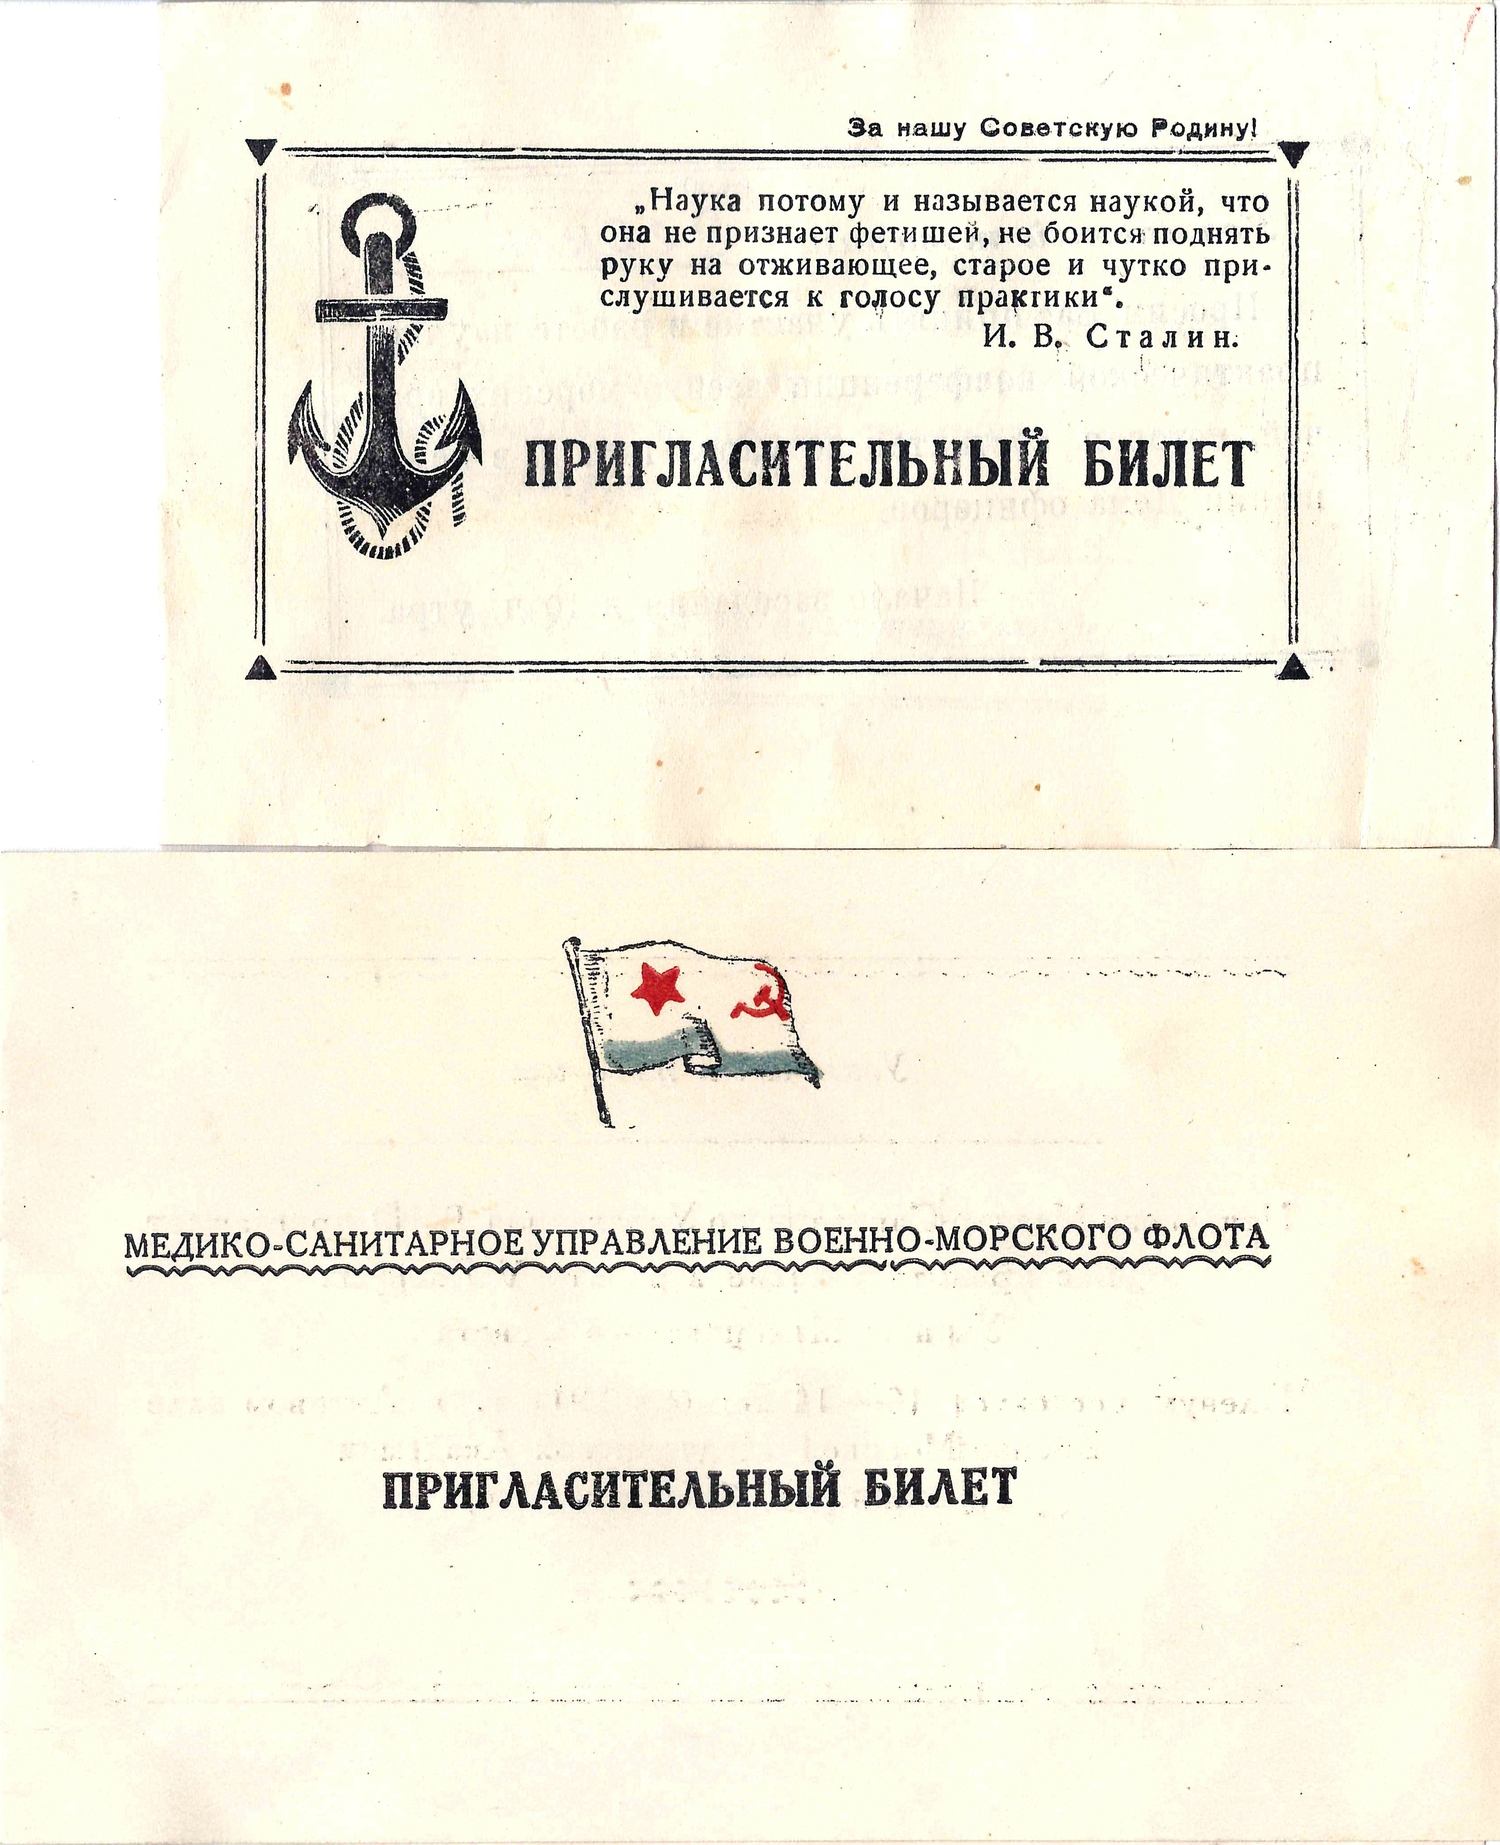 3 пригласительных билета и программа научной конференции. Вторая половина 1940-х - начало 1950-х годов. Их архива М.А. Зернова.